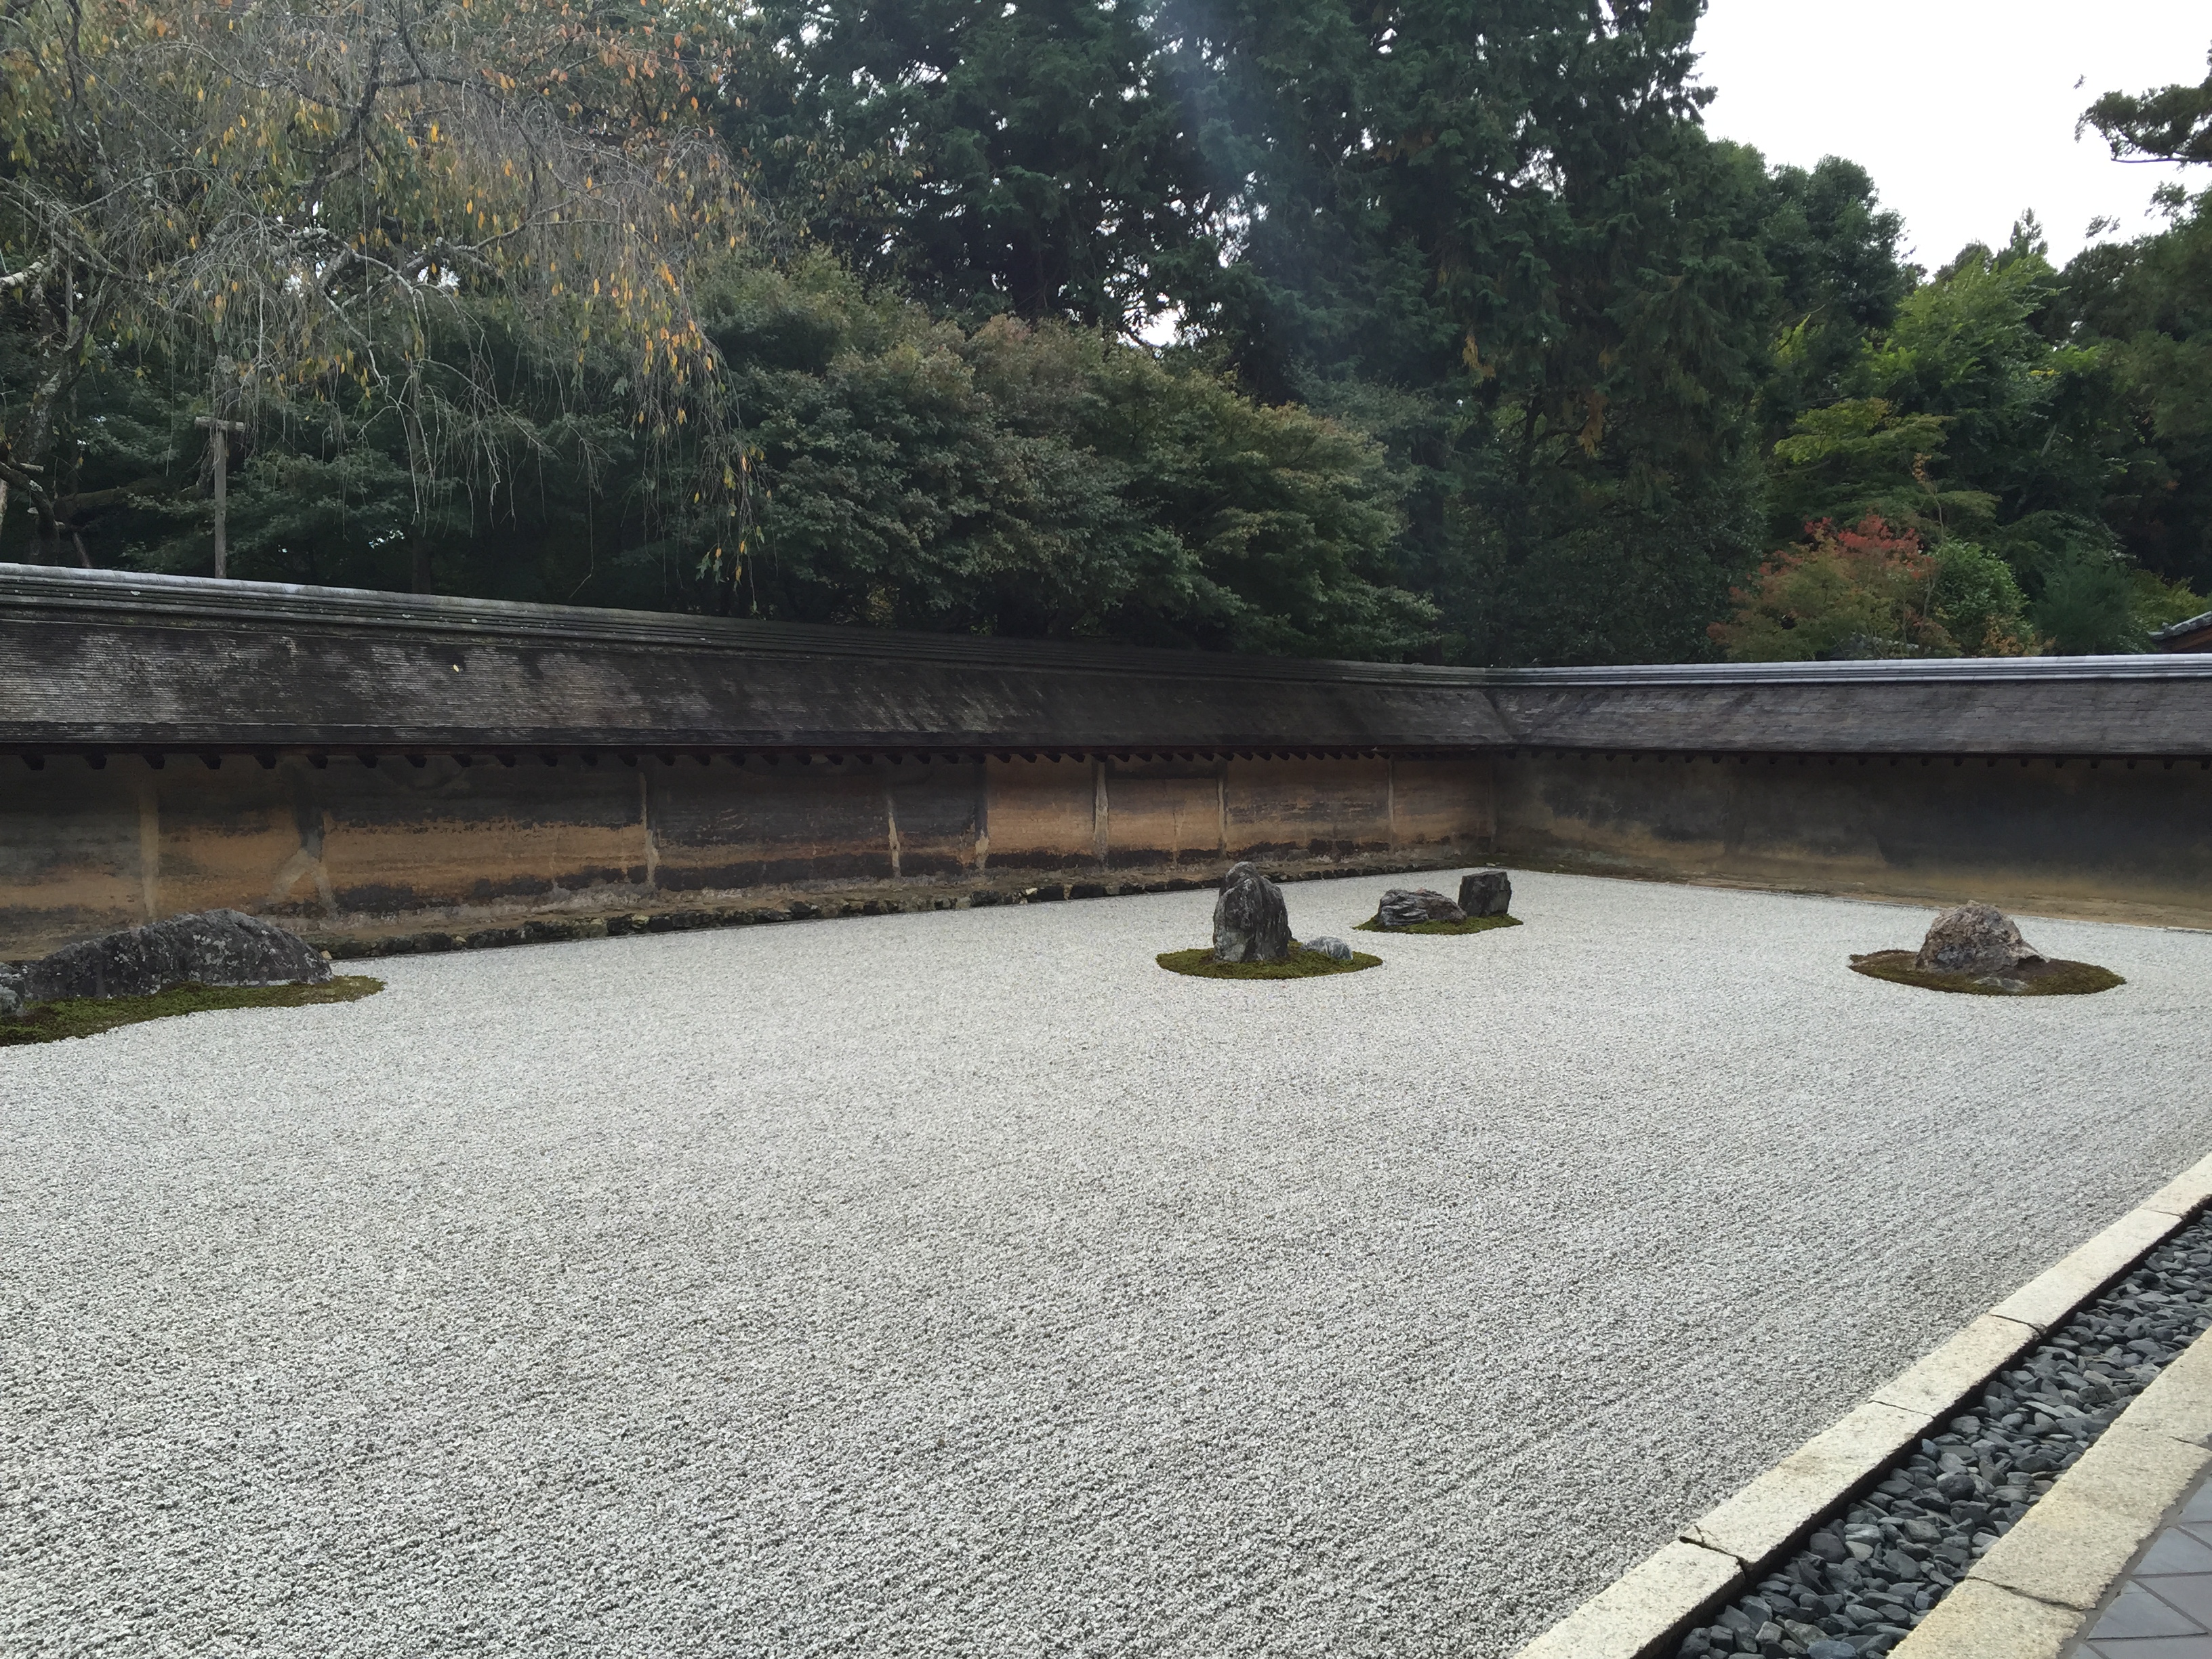 京都 国宝 世界遺産 京都龍安寺といえば石庭です 龍安寺には石庭以外の見所もあります 一味違う京都旅行を楽しむ 京都観光案内 動画有り